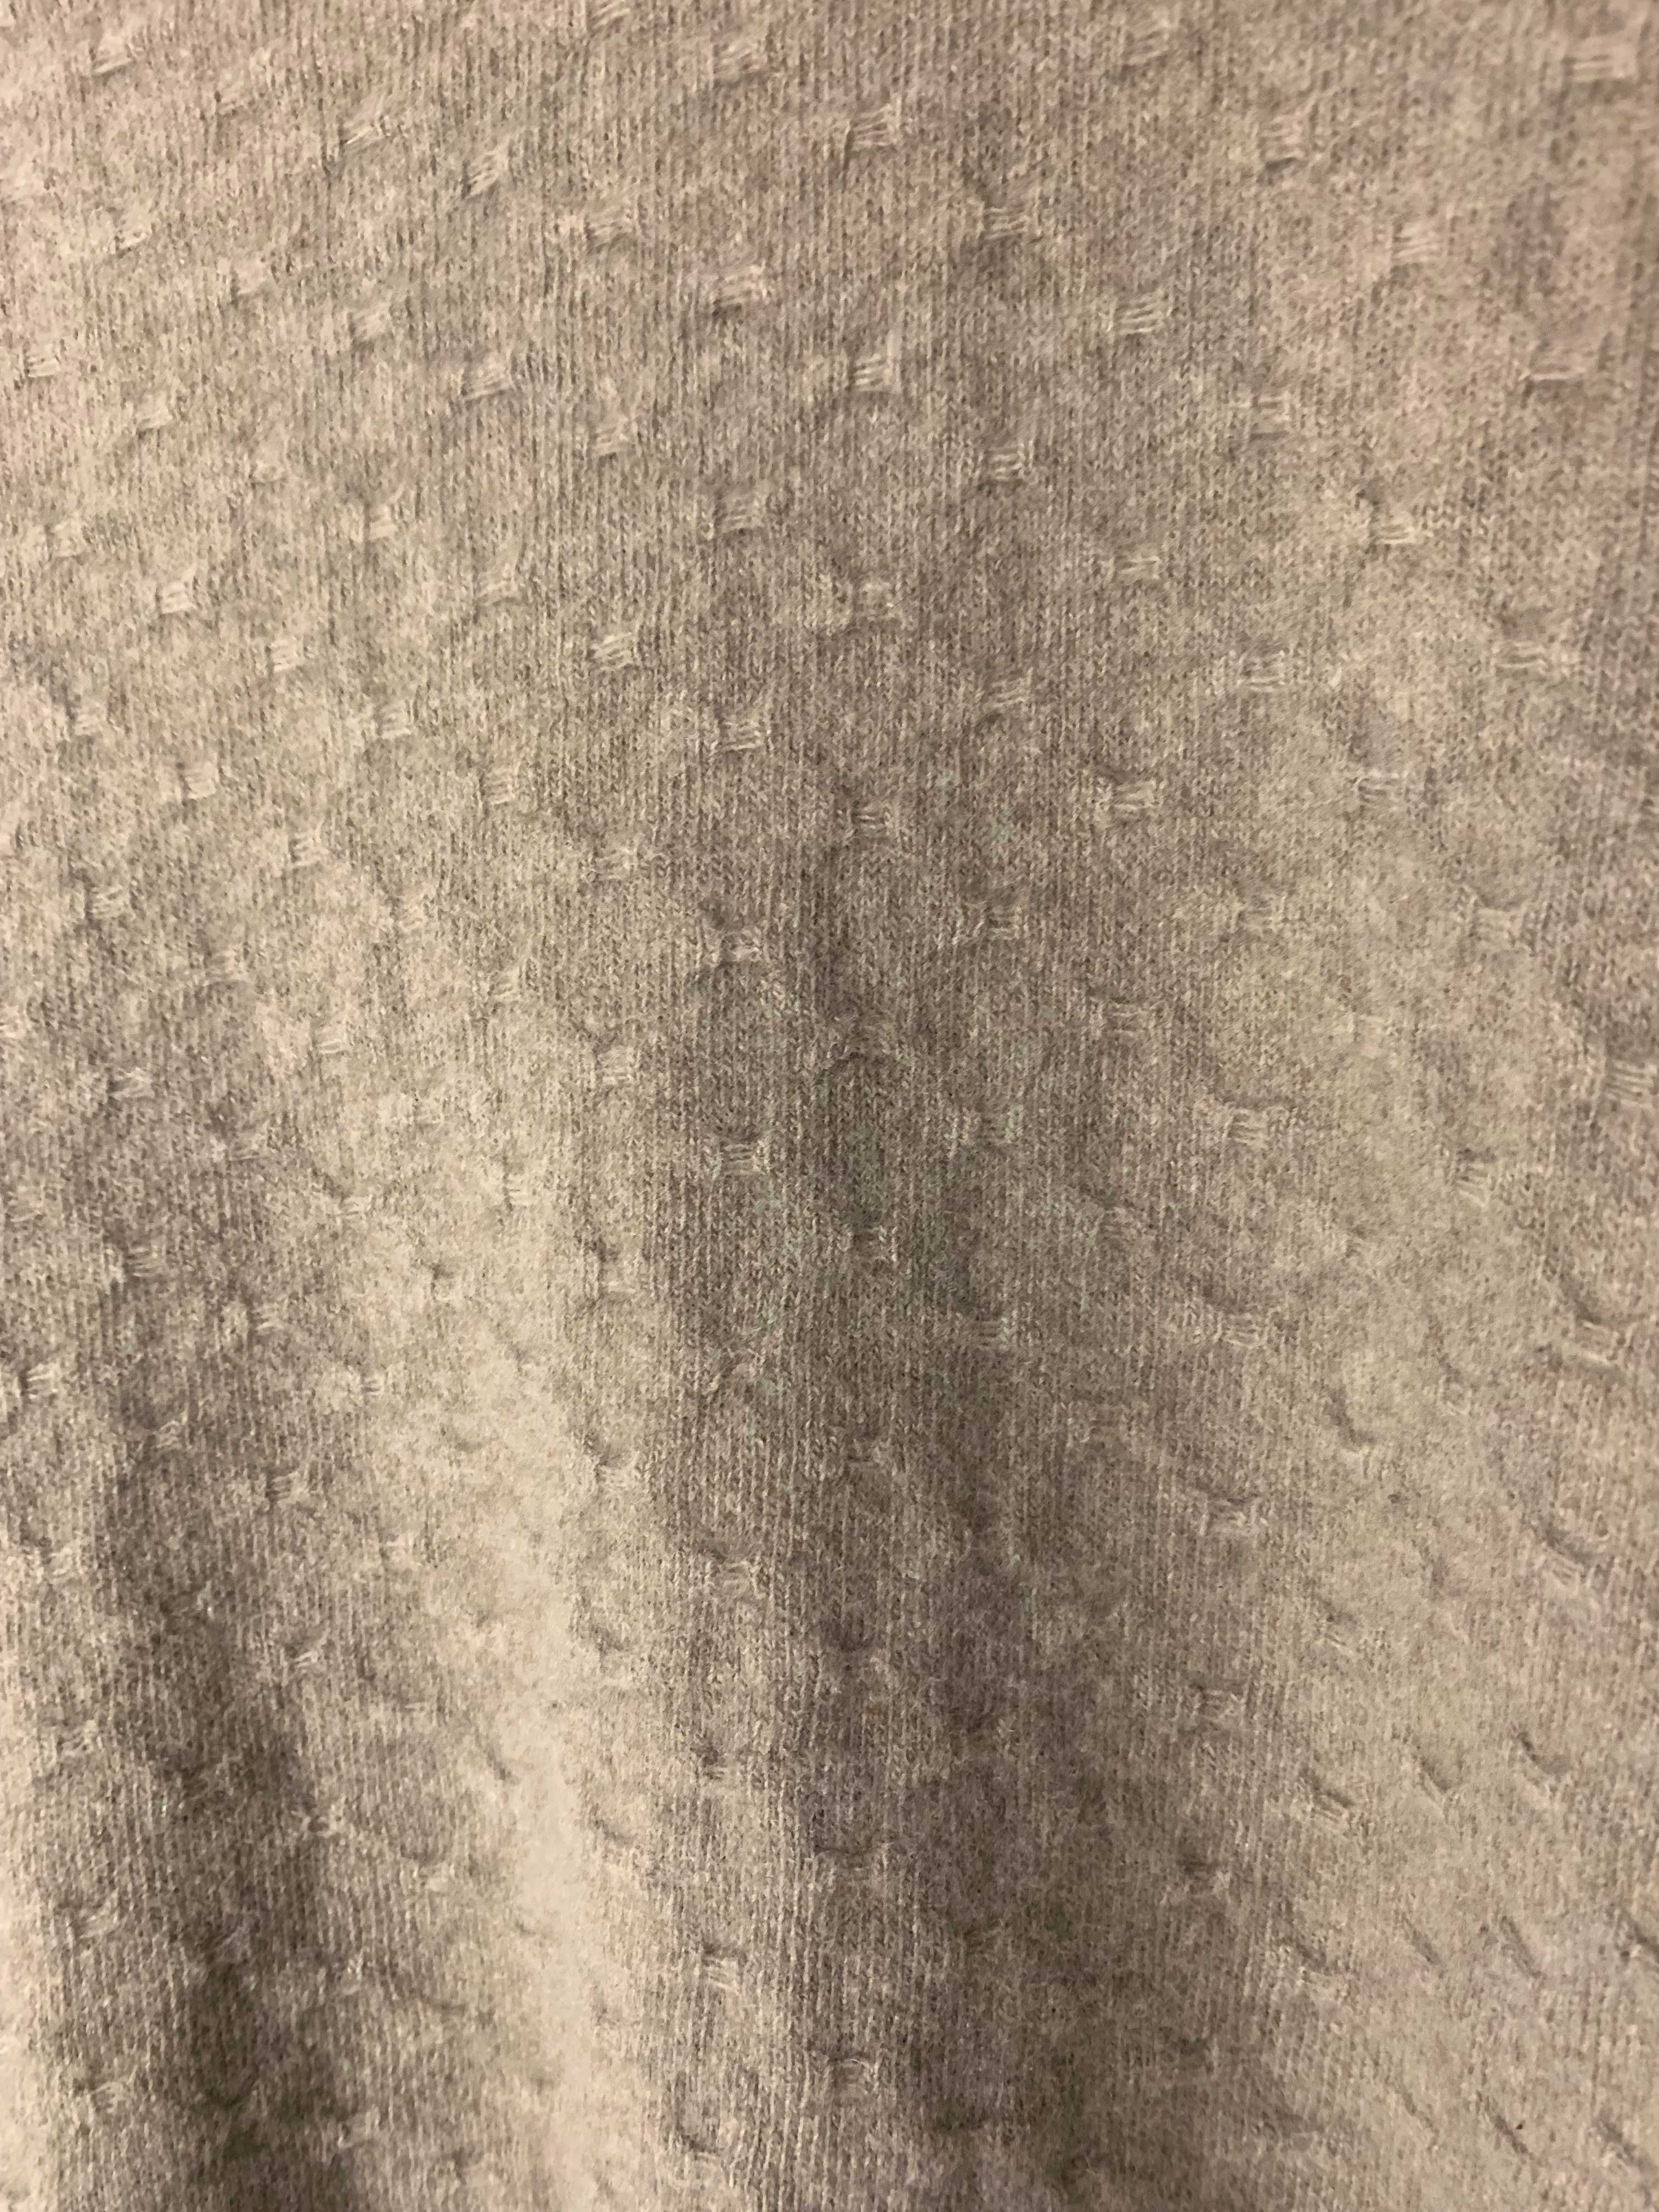 sweter XS S beż brąz oversize 100% wełna owcza lana superfine wełniany